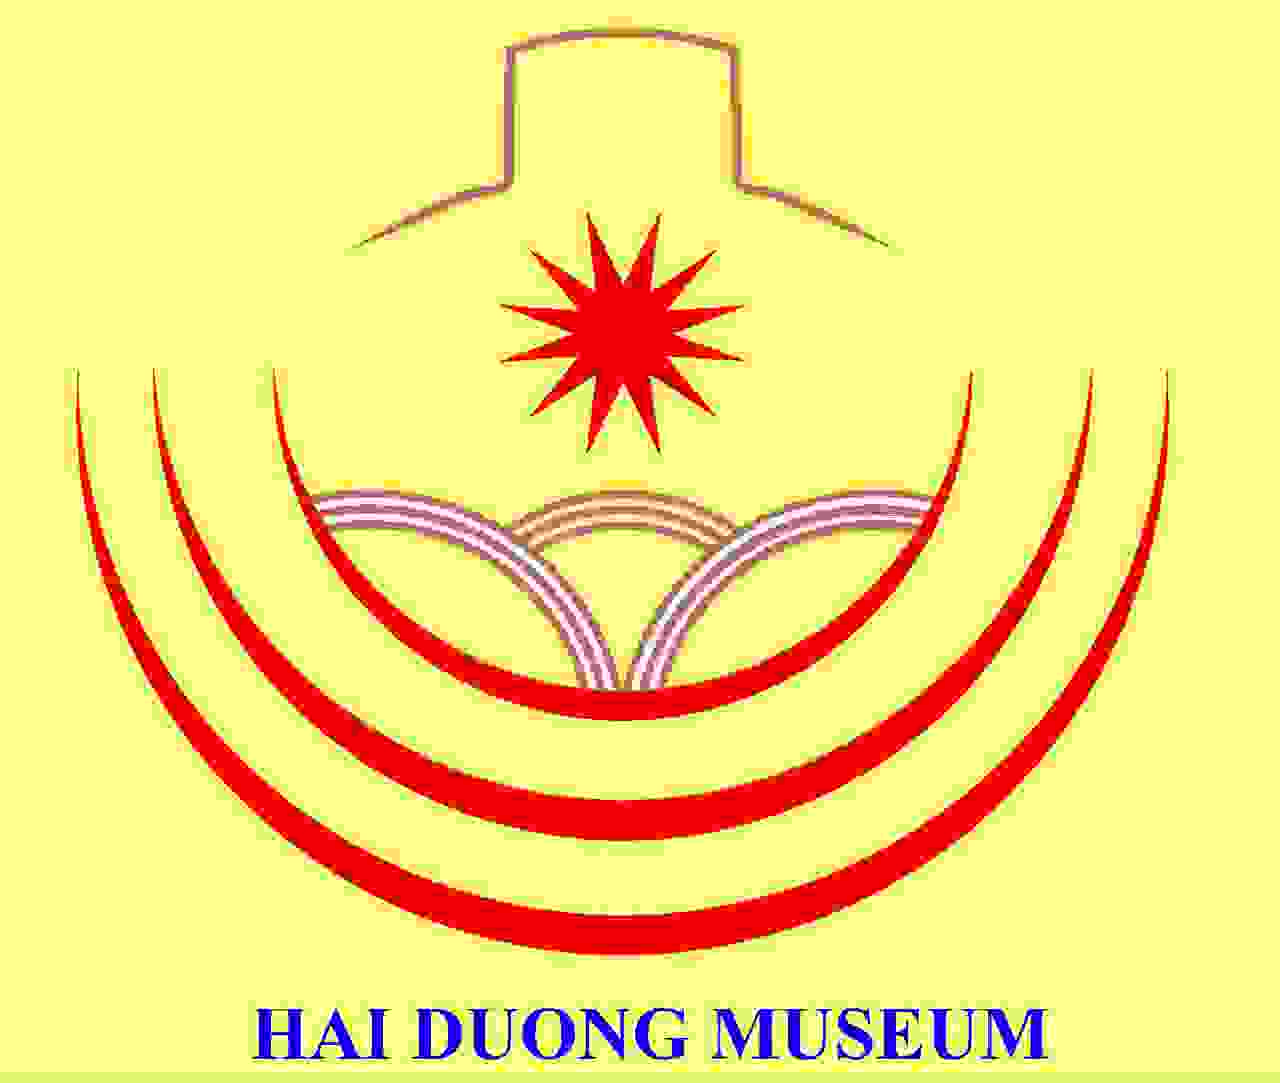 Hai Duong Museum